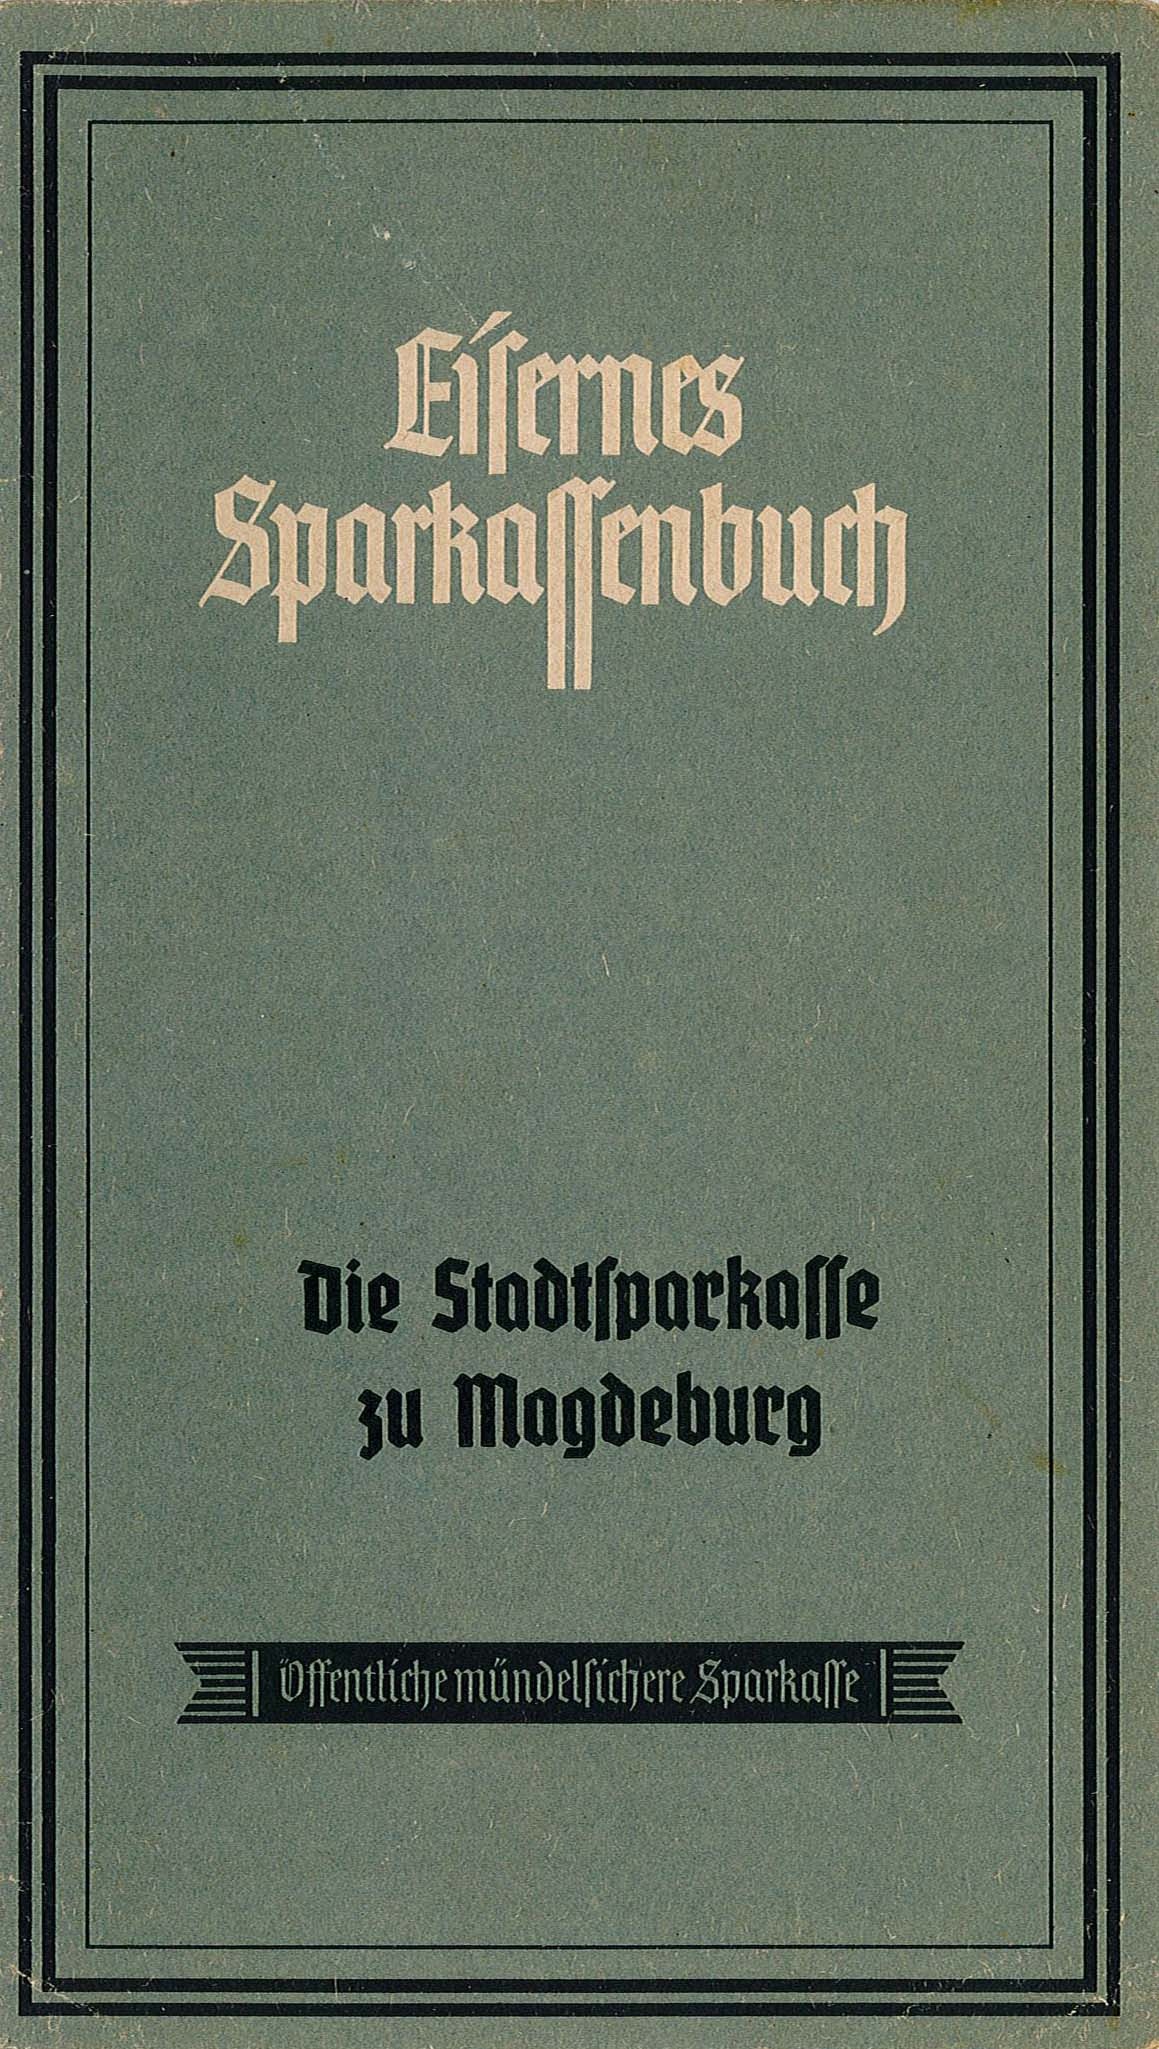 Eisernes Sparkassenbuch von Paul Scholz, 1942-1943 (Museum Wolmirstedt RR-F)